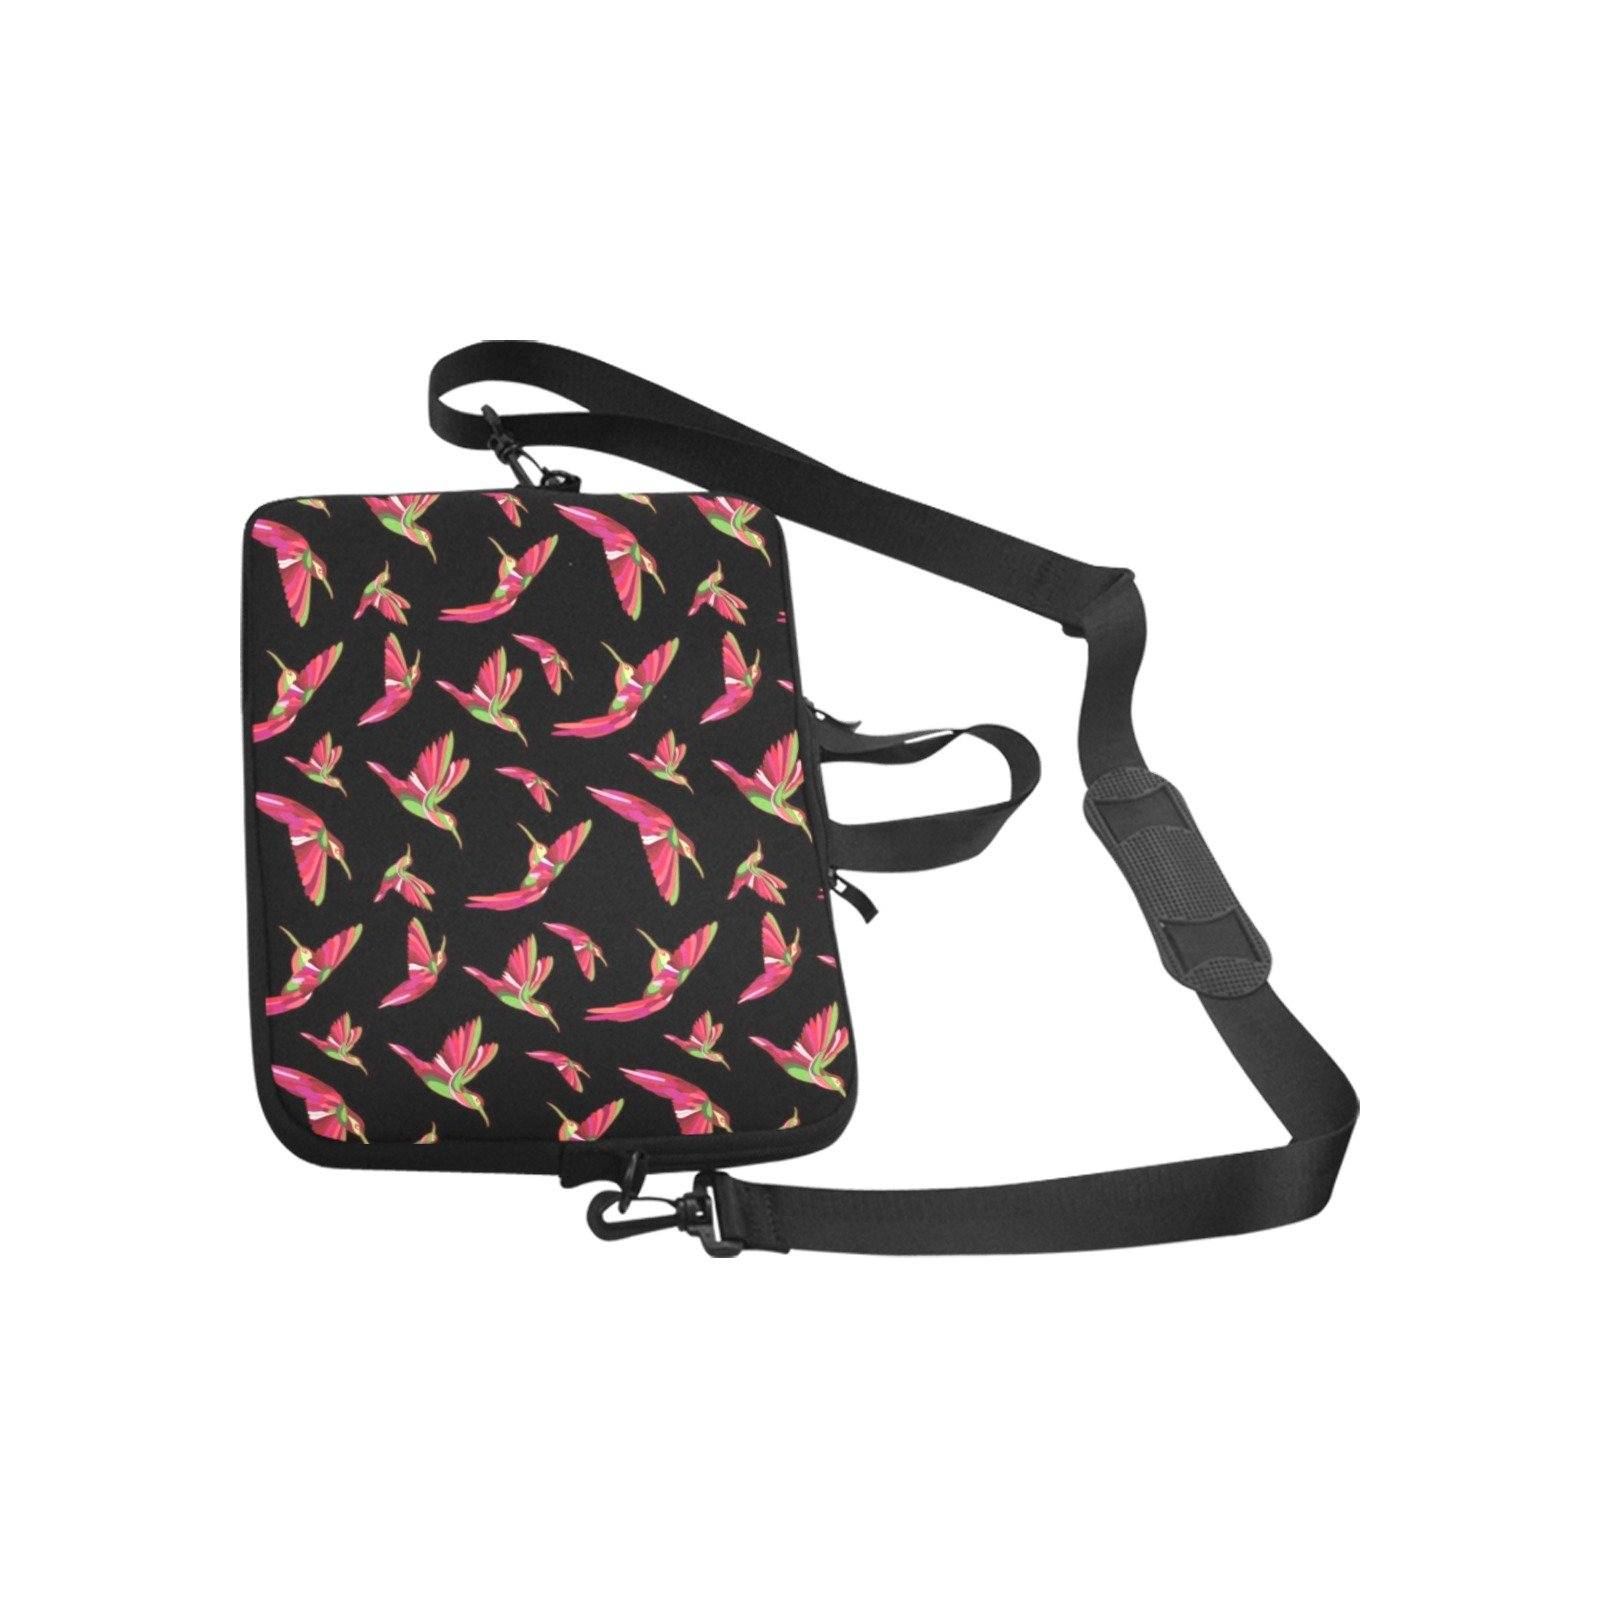 Red Swift Colourful Black Laptop Handbags 11" bag e-joyer 